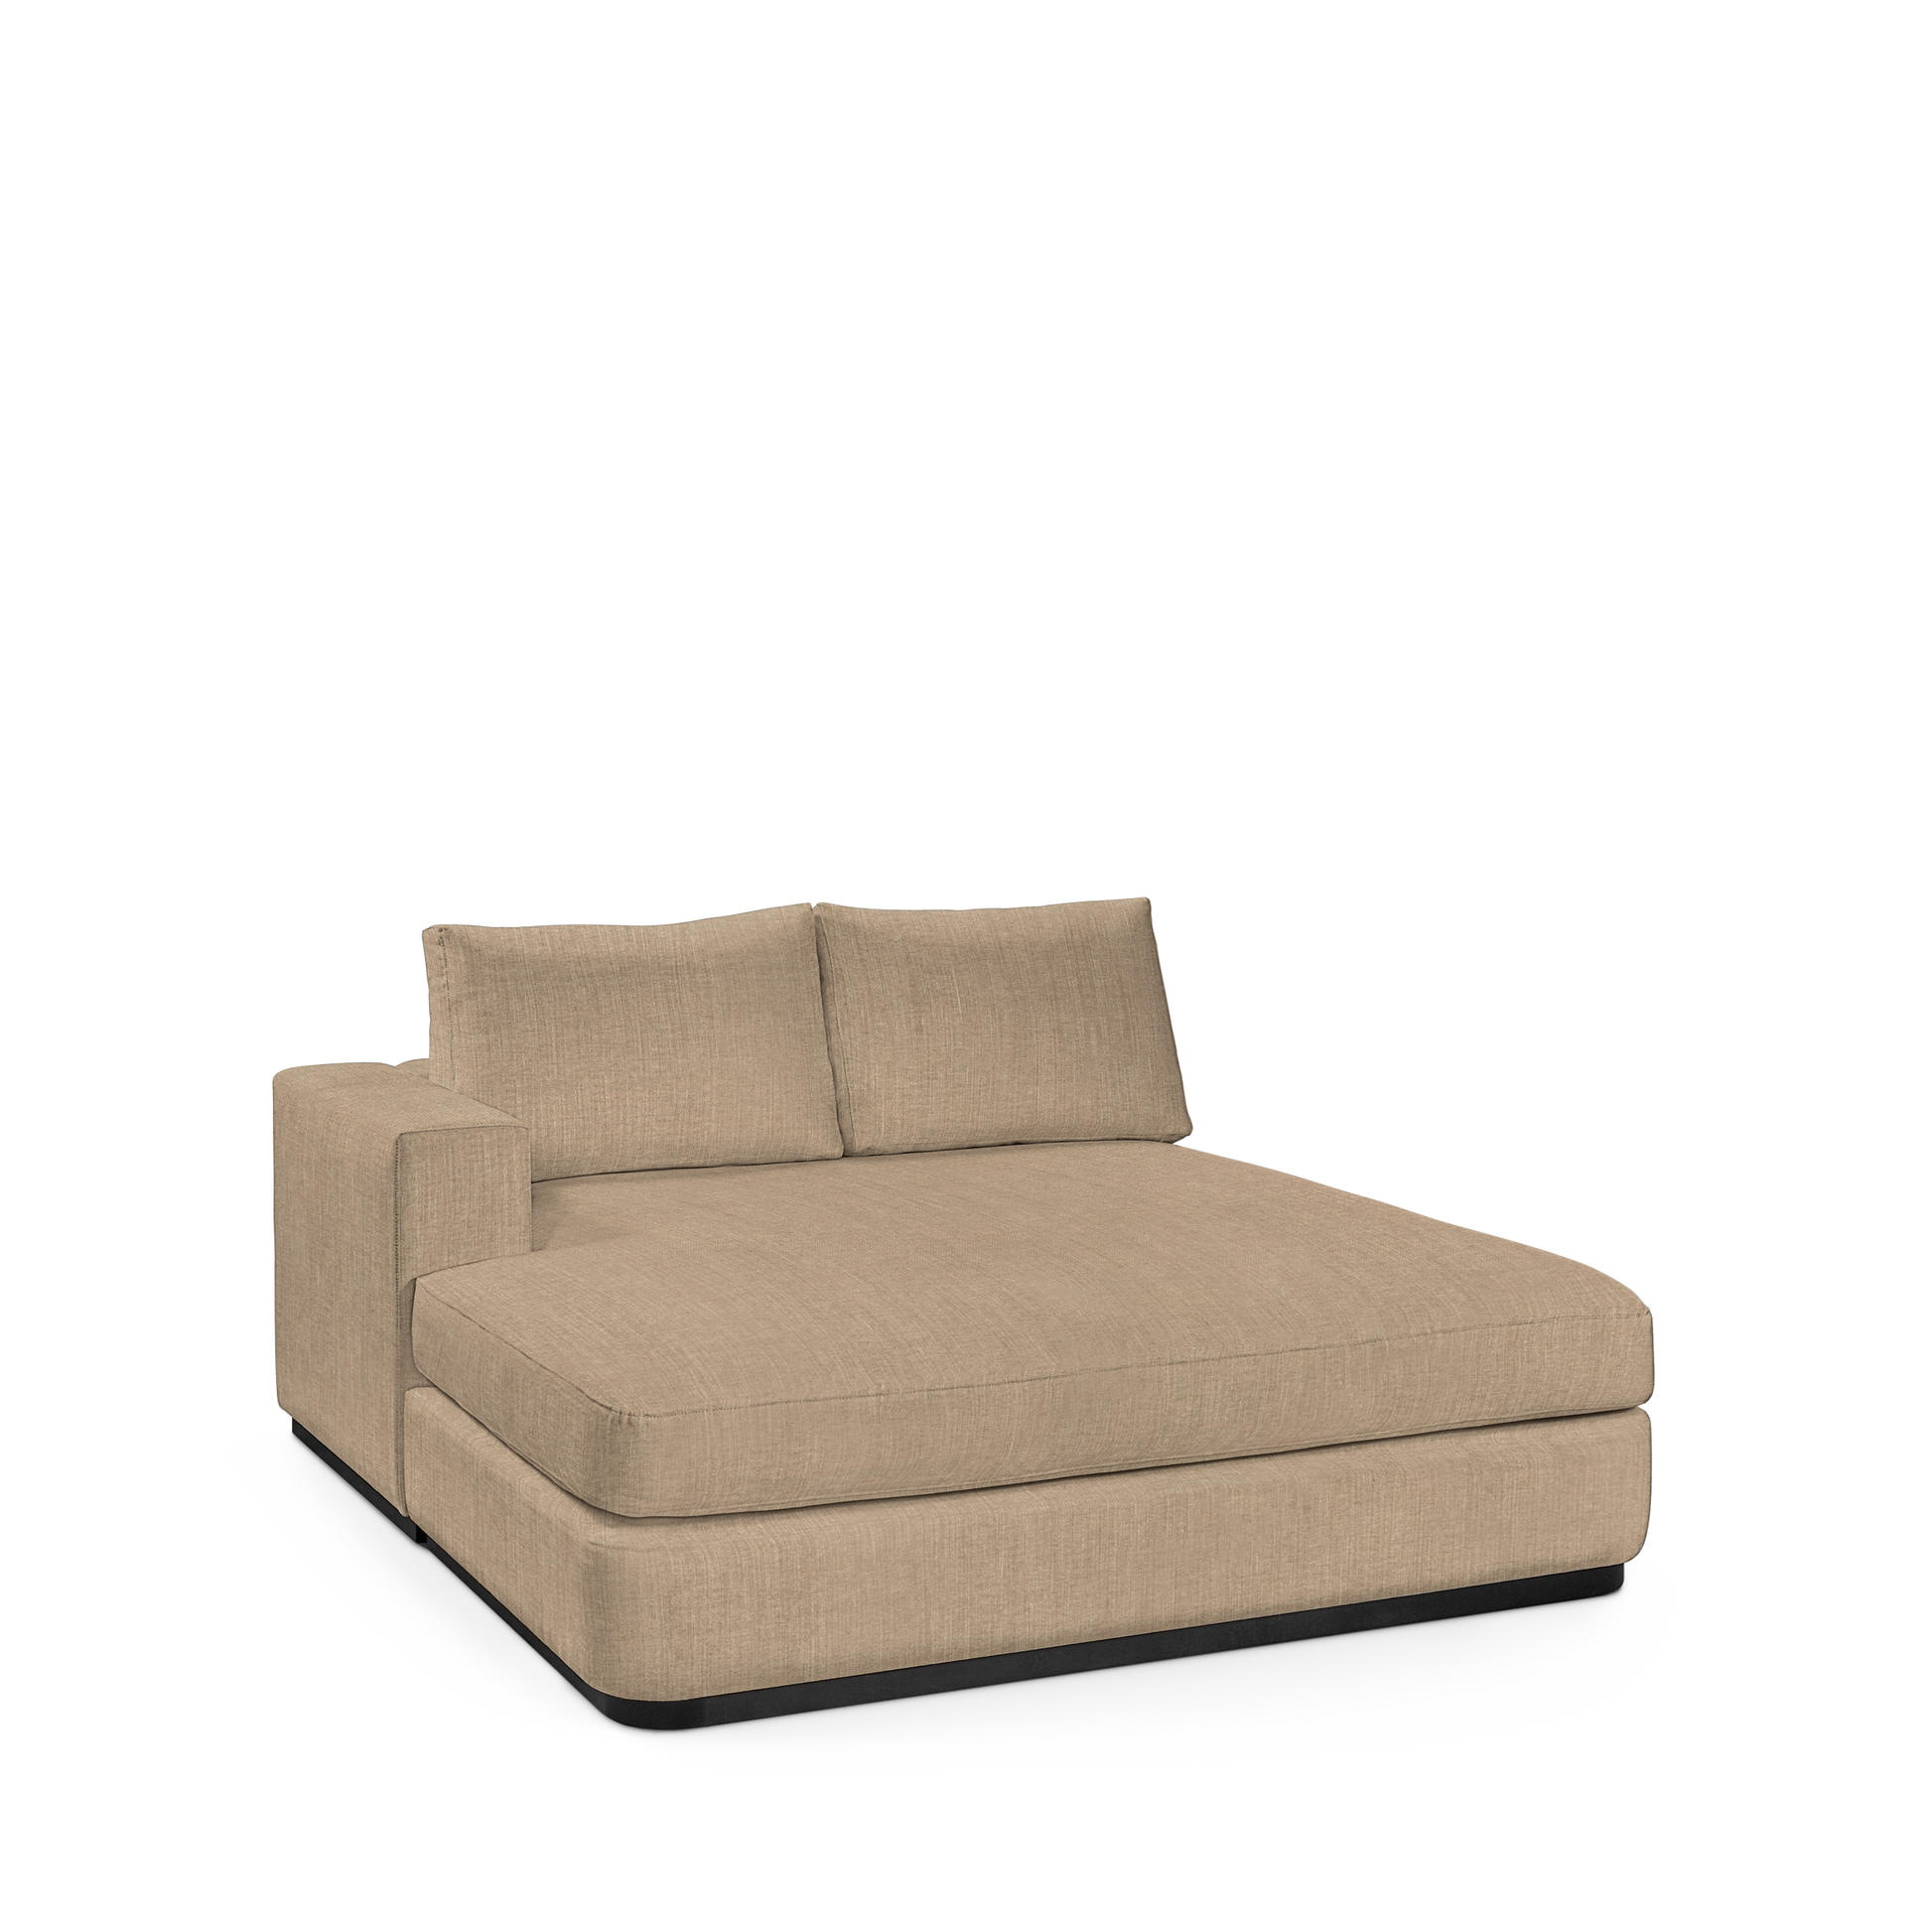 ATLAS 160 Lounge Bed arm rest left with khaki textile